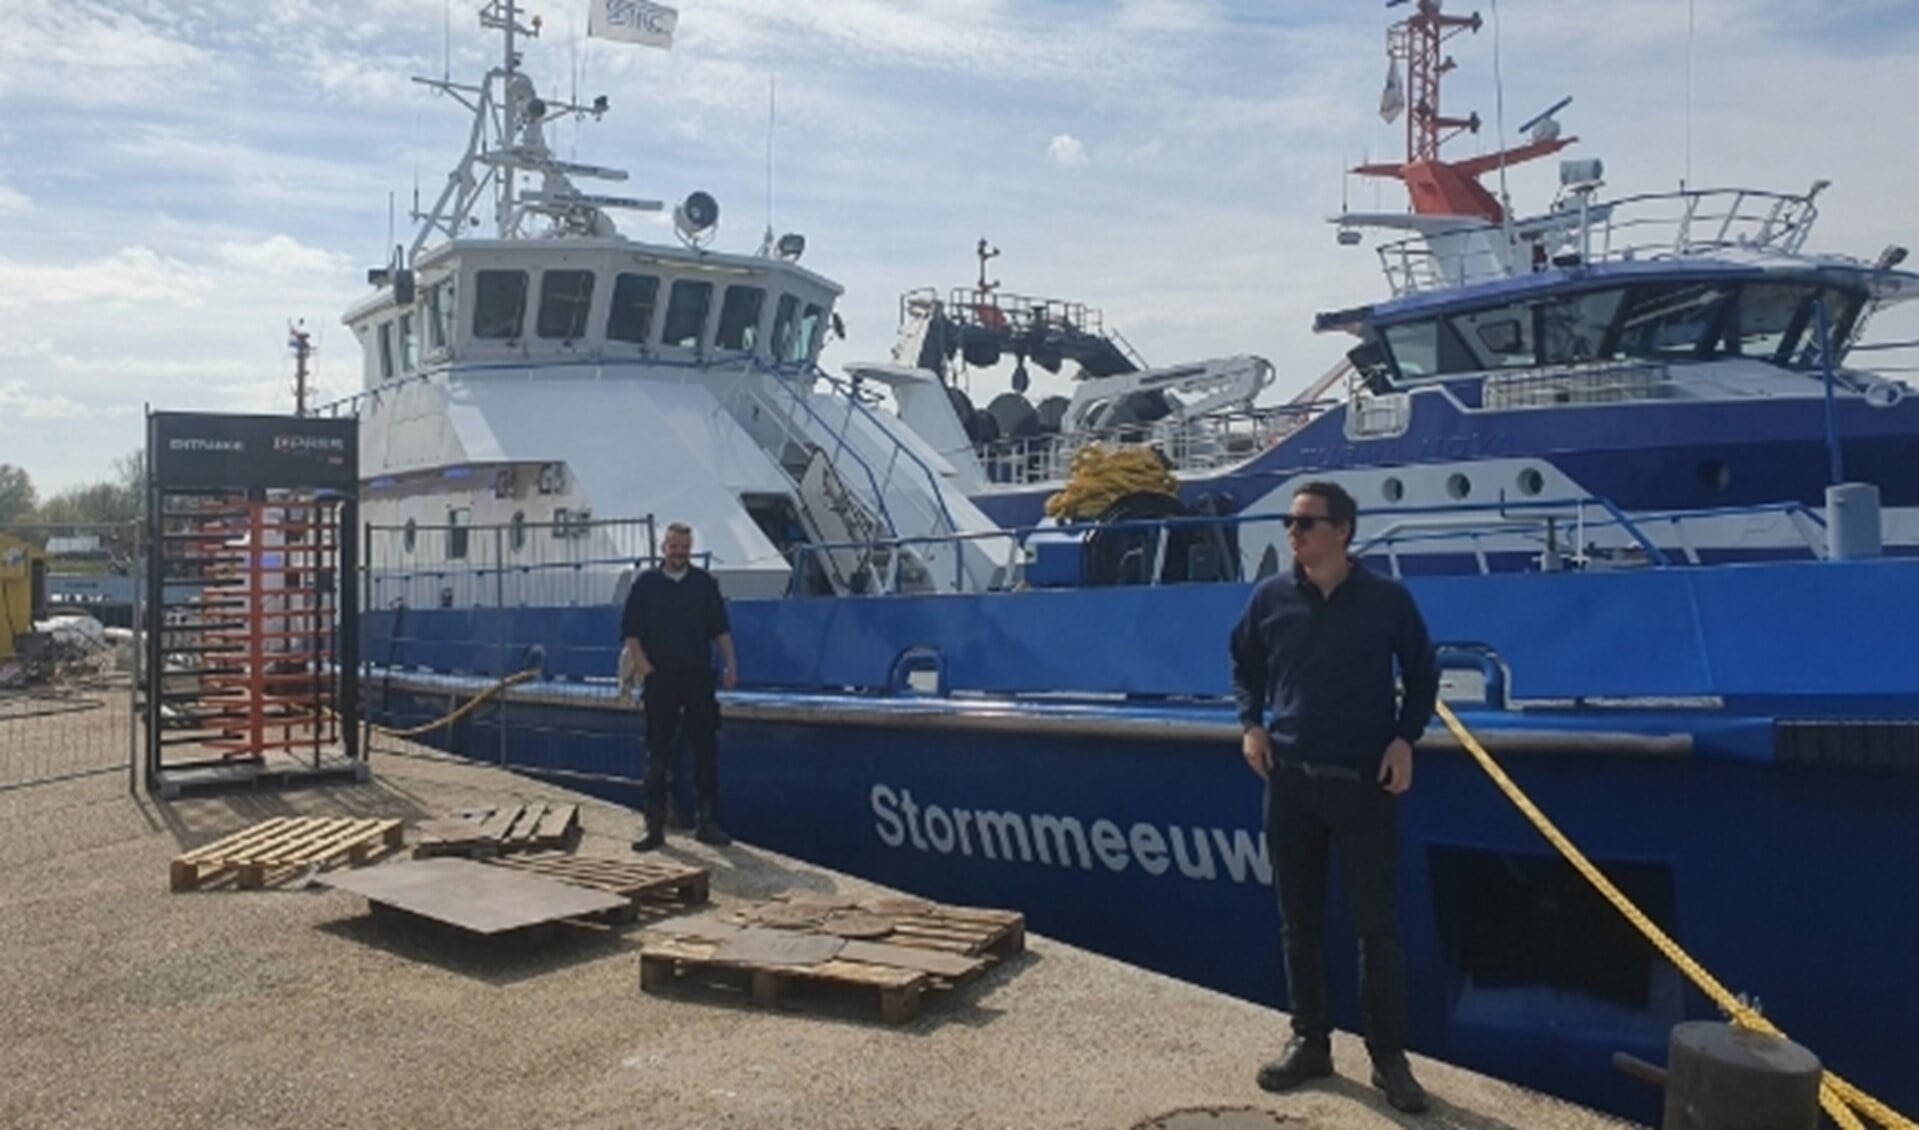 Stormmeeuw, het nieuwe opleidingsschip voor de zeevaartopleidingen bij STC Group, mét bemanning.